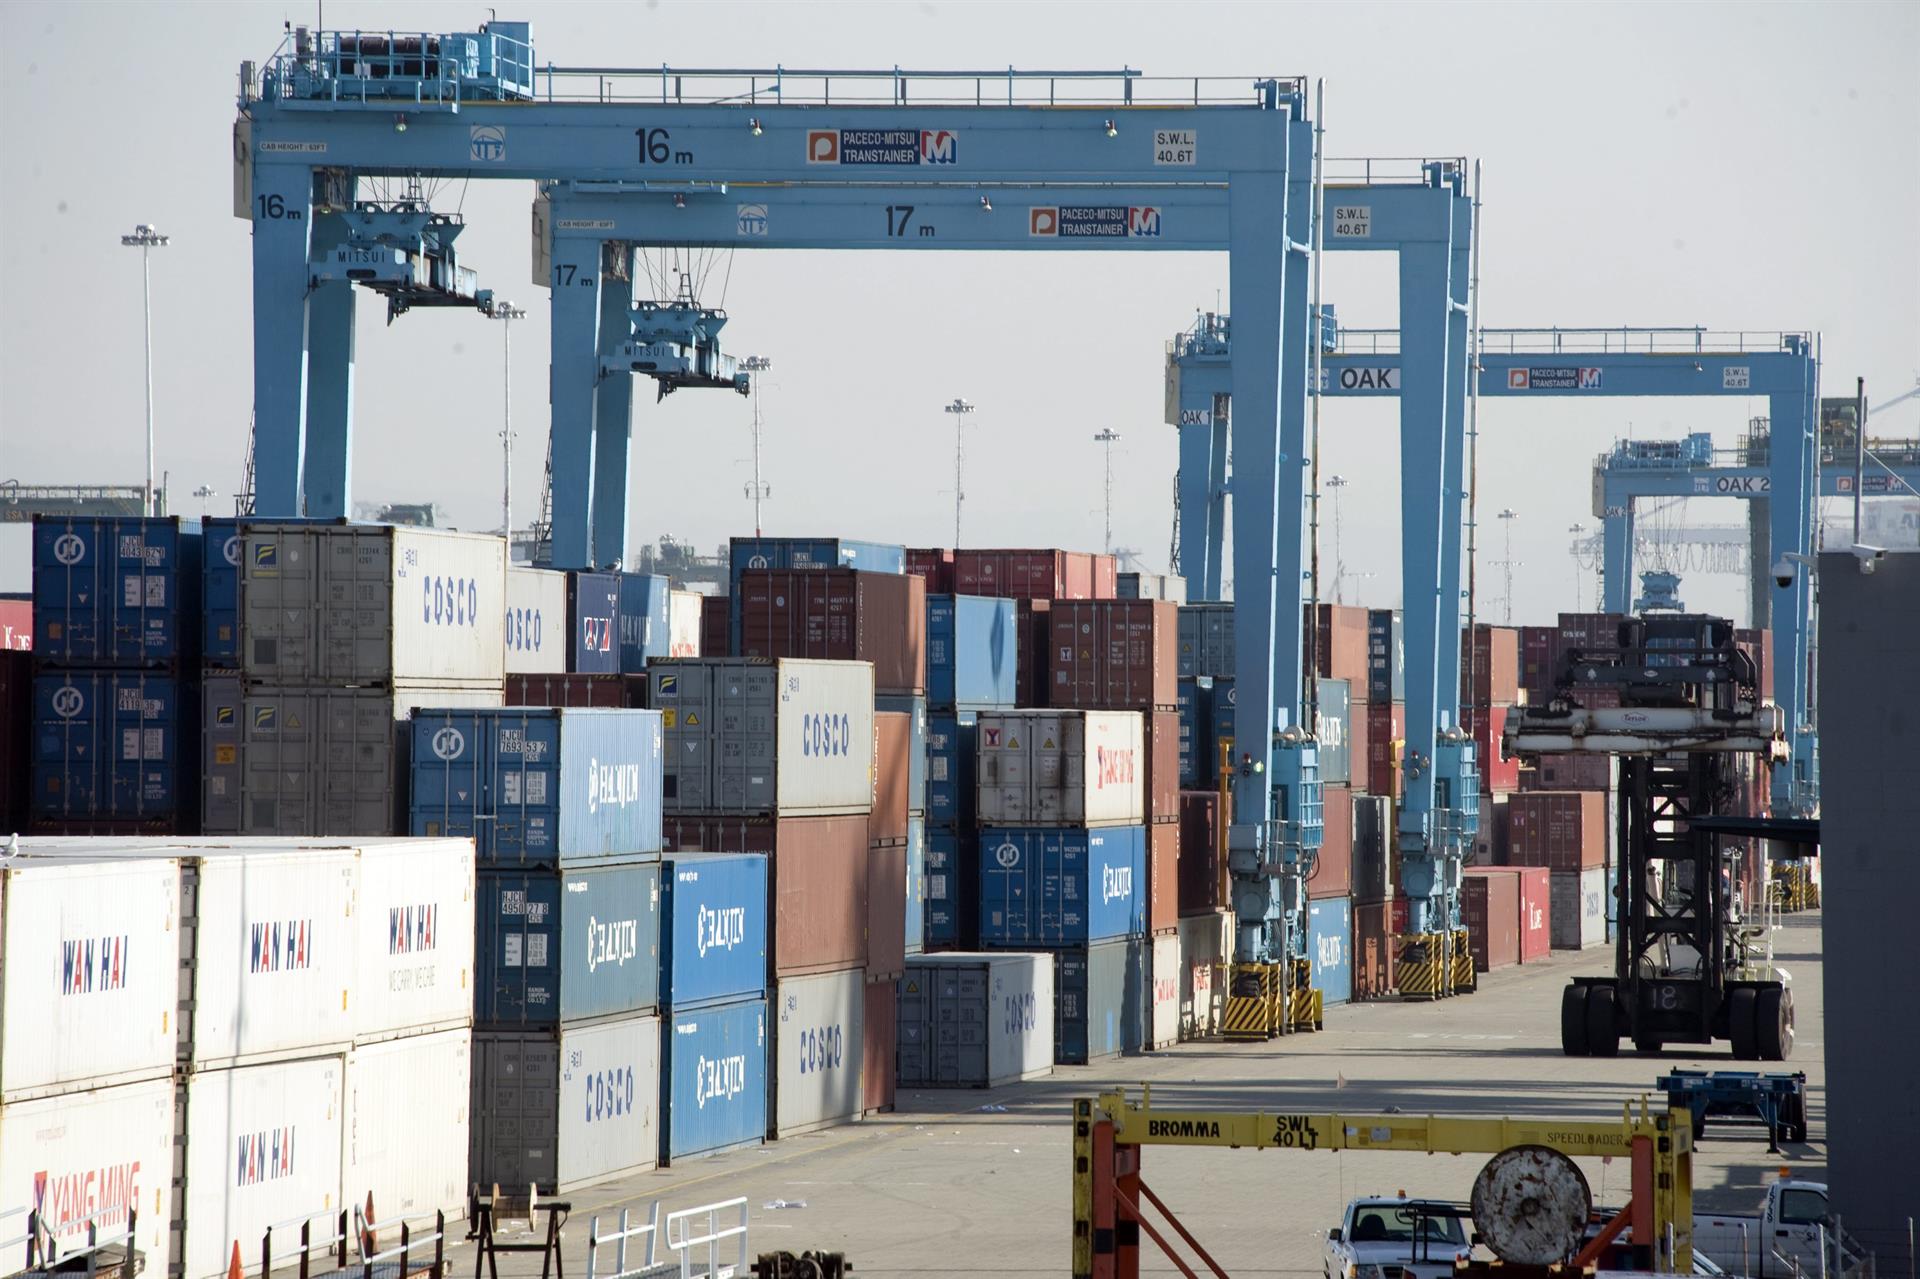 Vista de varios contenedores en el Puerto de Oakland, California (EEUU), donde llegan los barcos provenientes de Asia con productos de consumo. Imagen de archivo. EFE/JOHN G. MABANGLO
